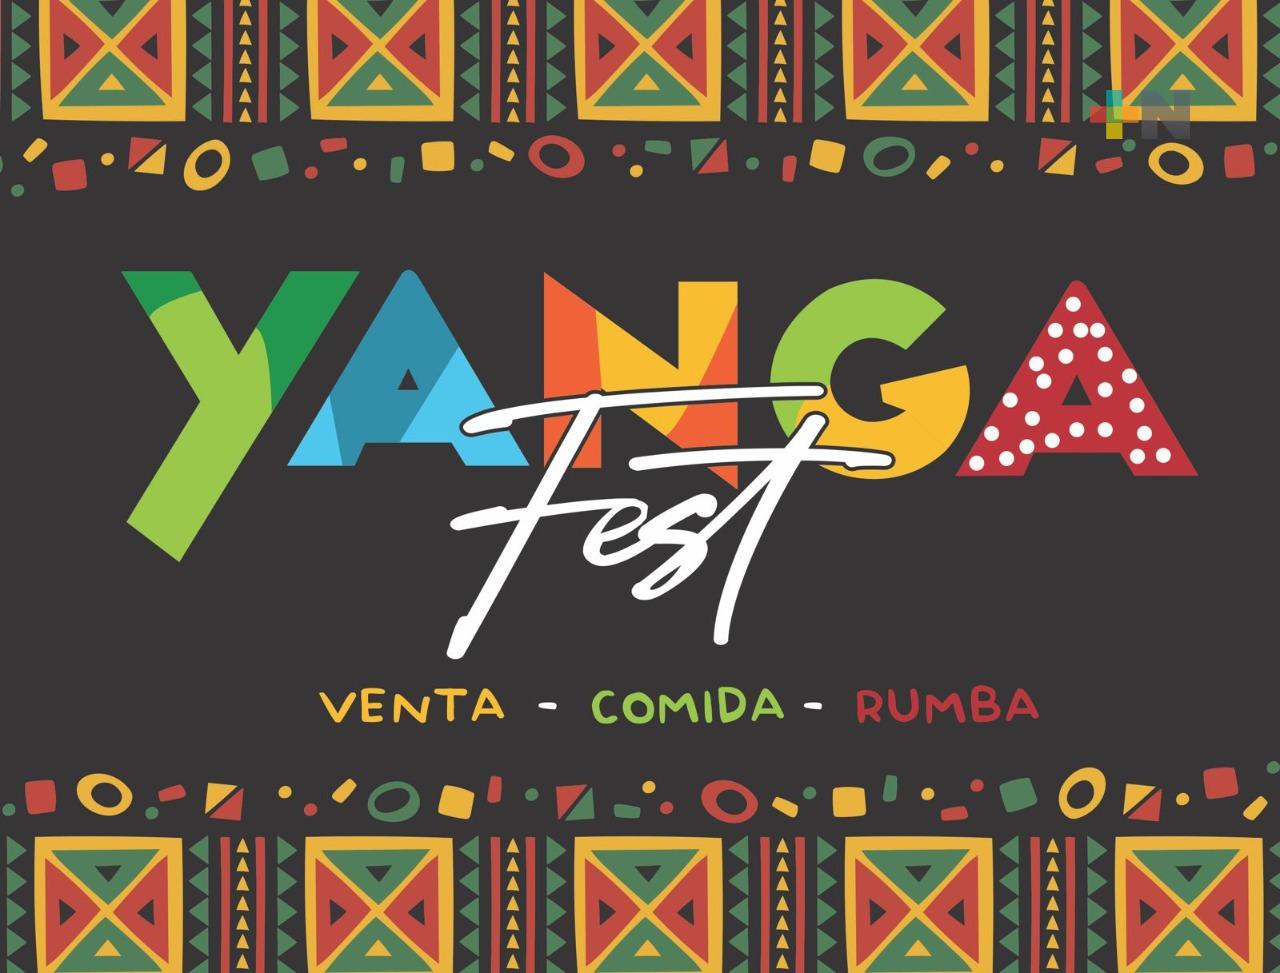 Yanga Fest busca incentivar comercio local y gastronomía tradicional